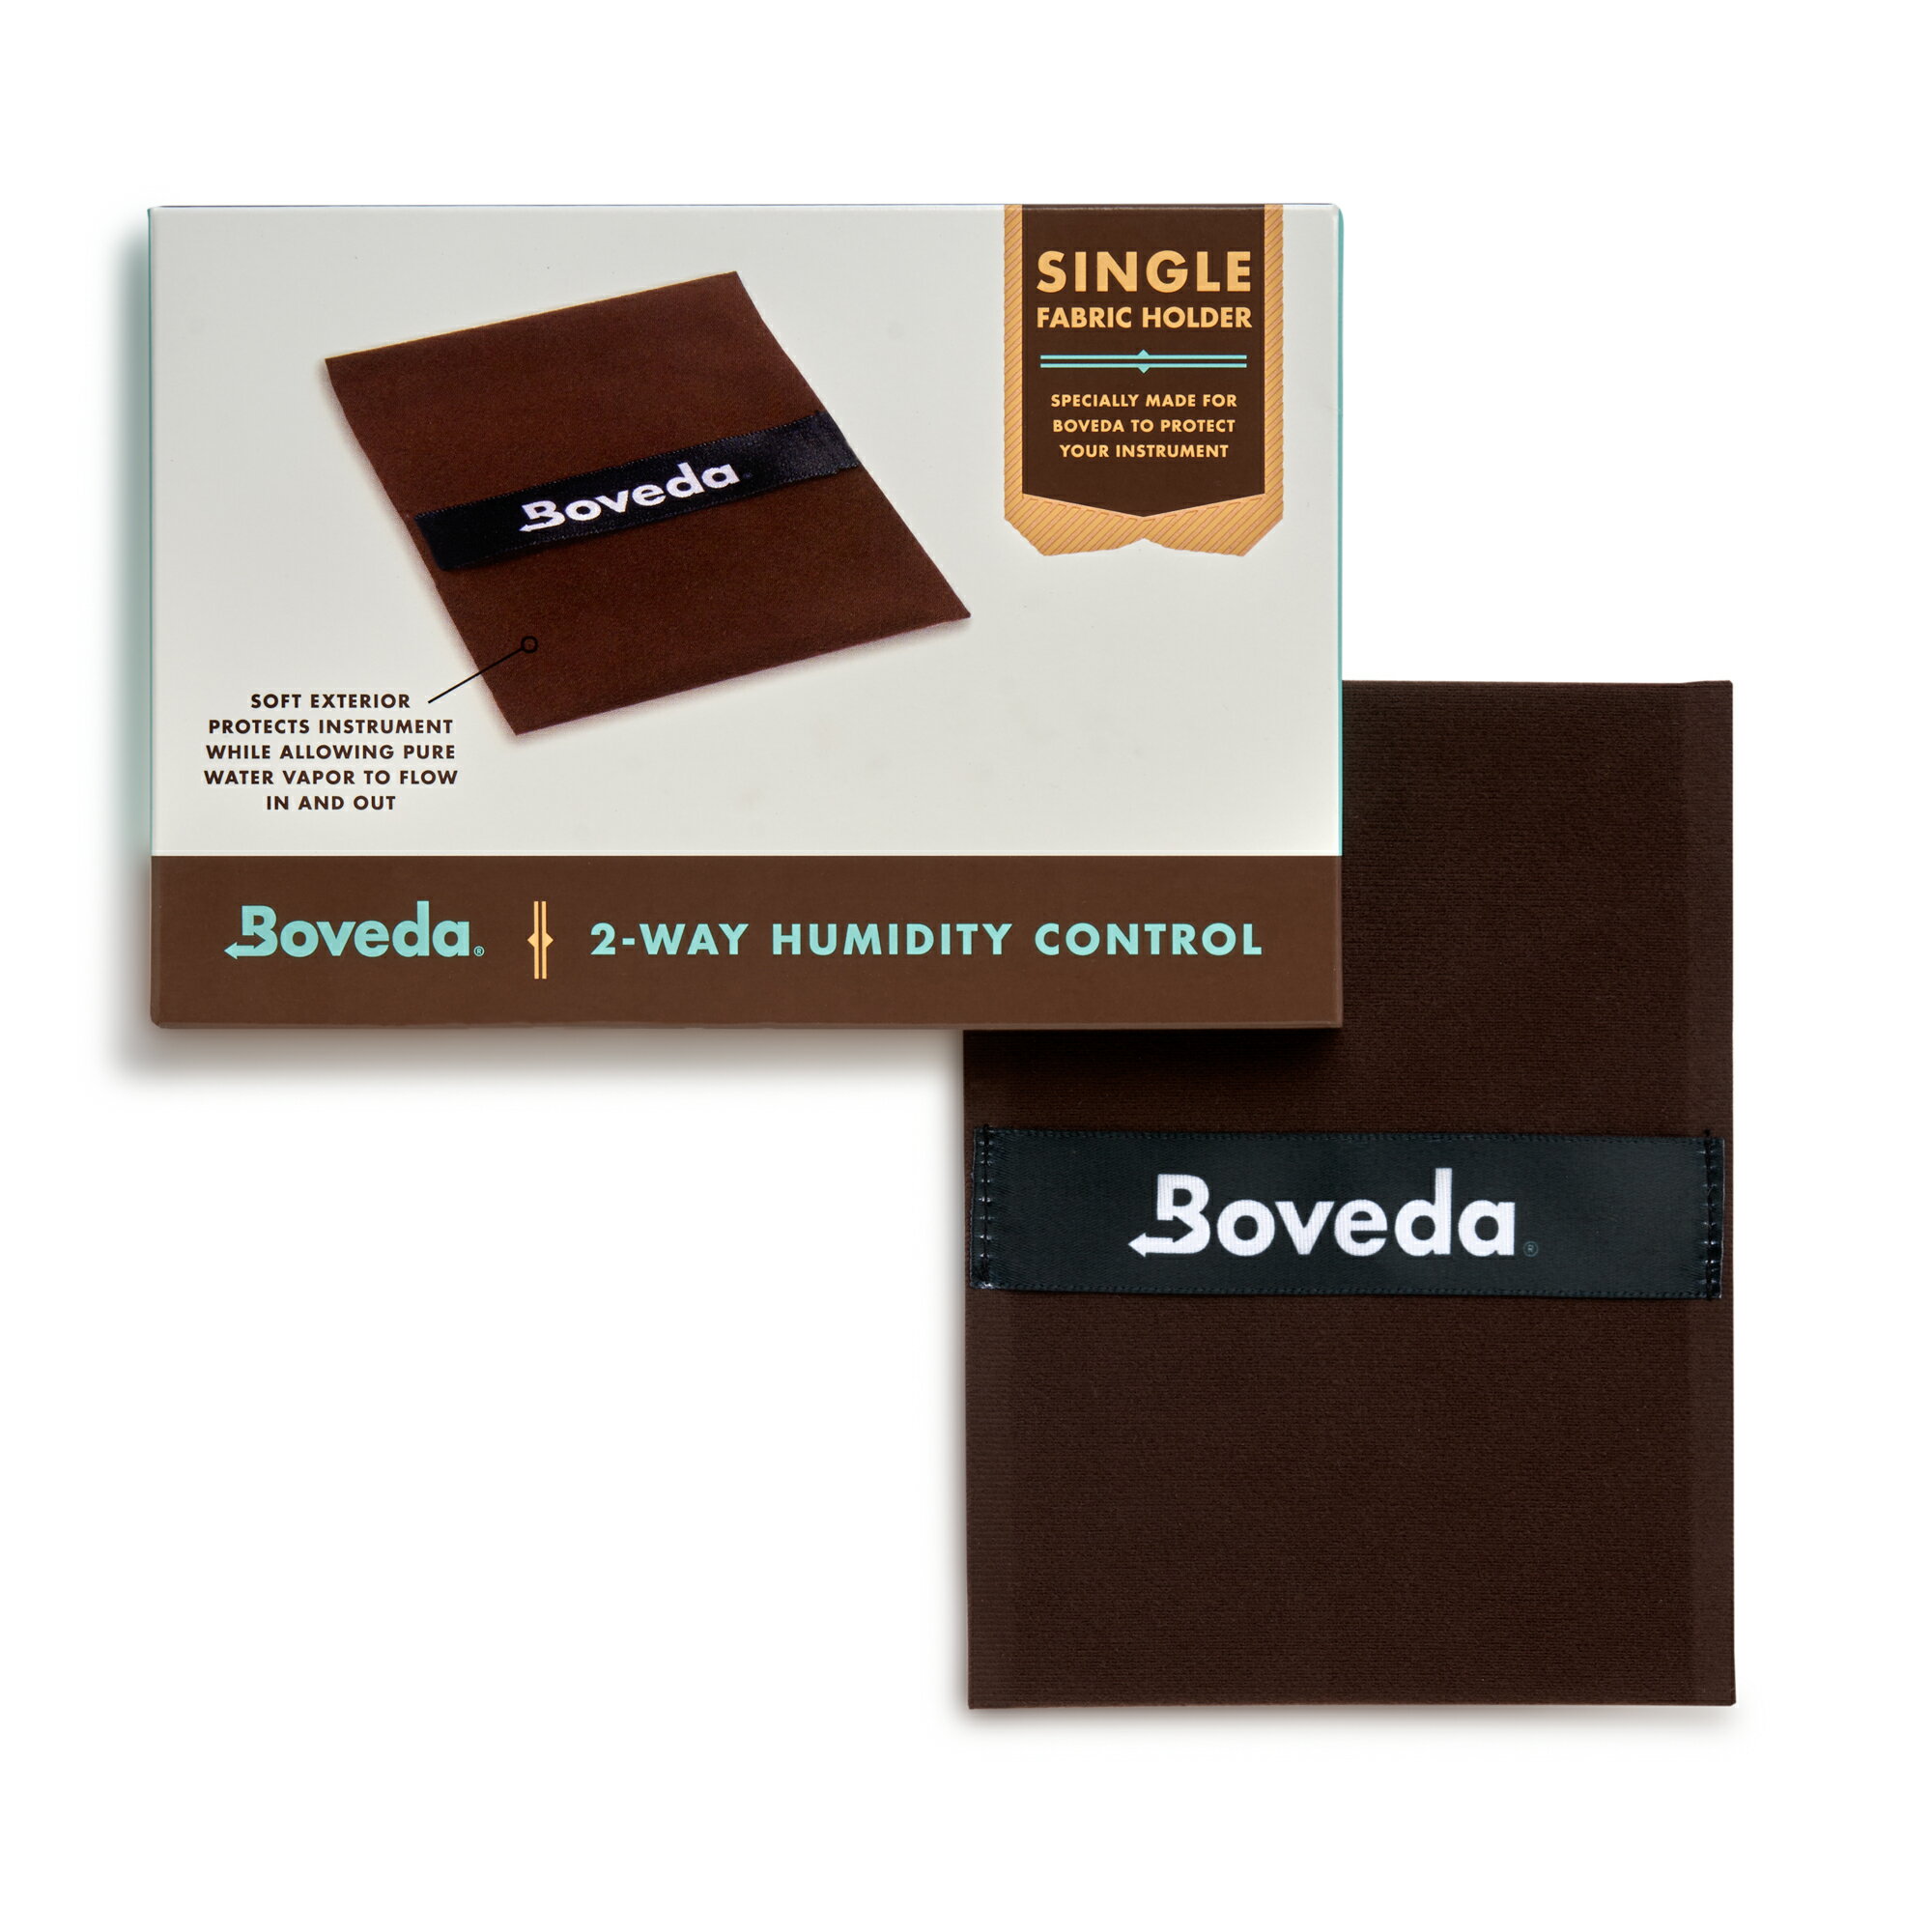 【ボベダ公式】Boveda 楽器用 ダブル-スリ...の商品画像